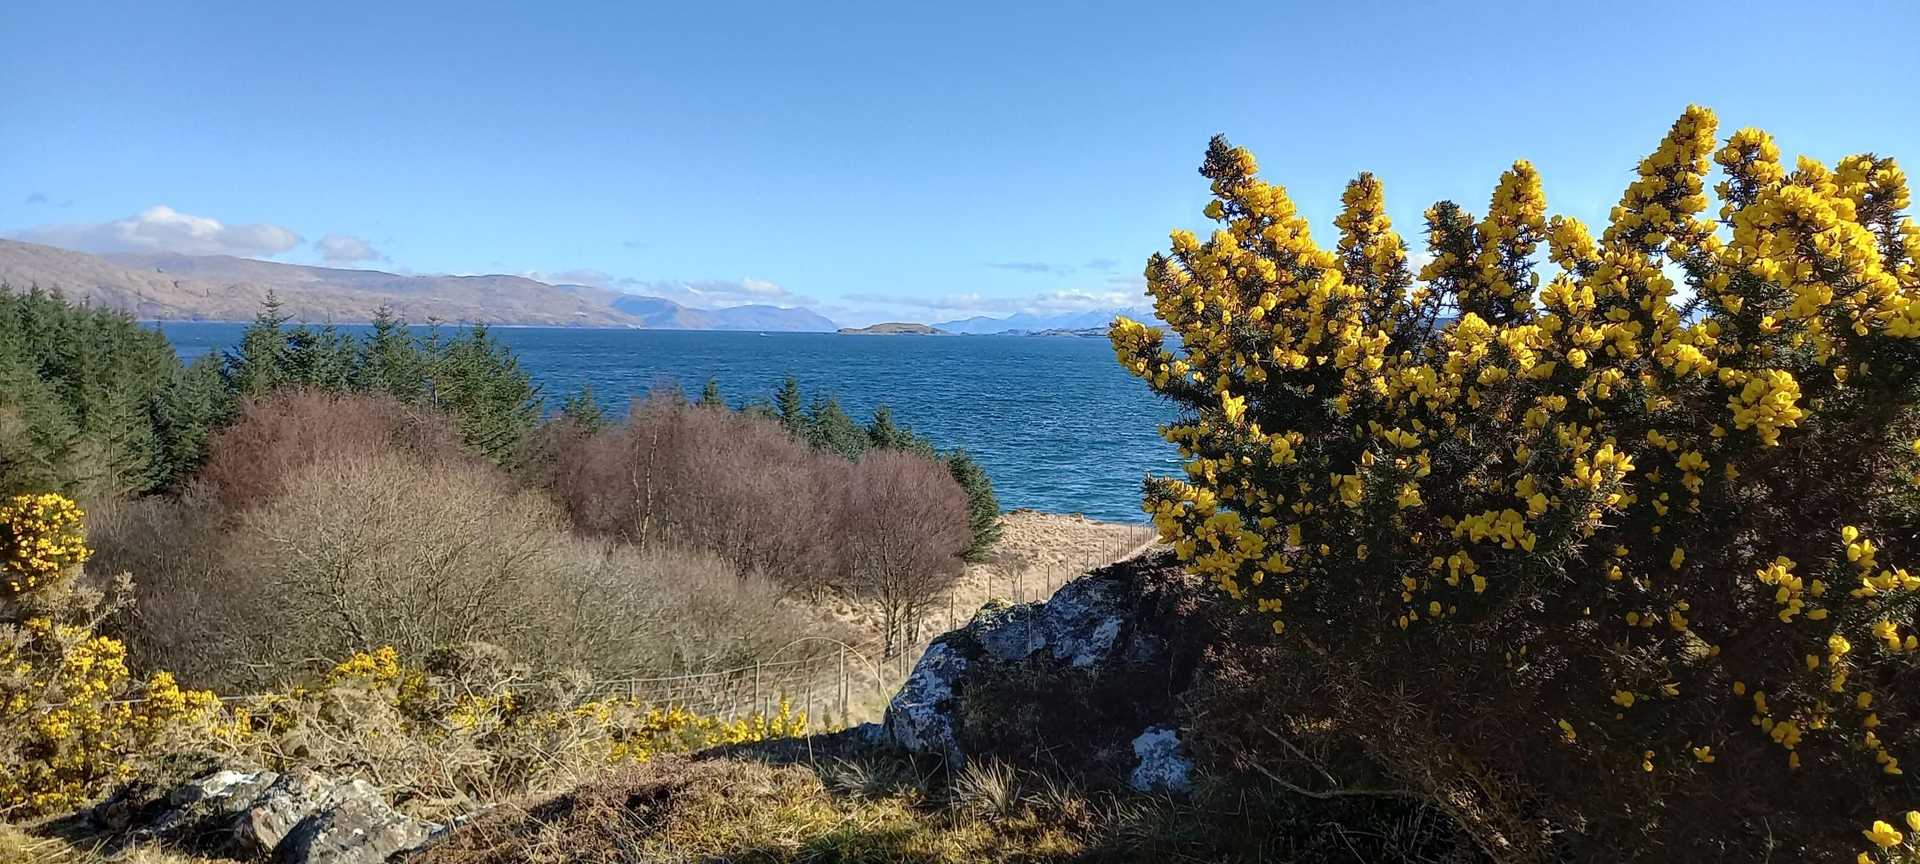 looking across Loch Lhinne